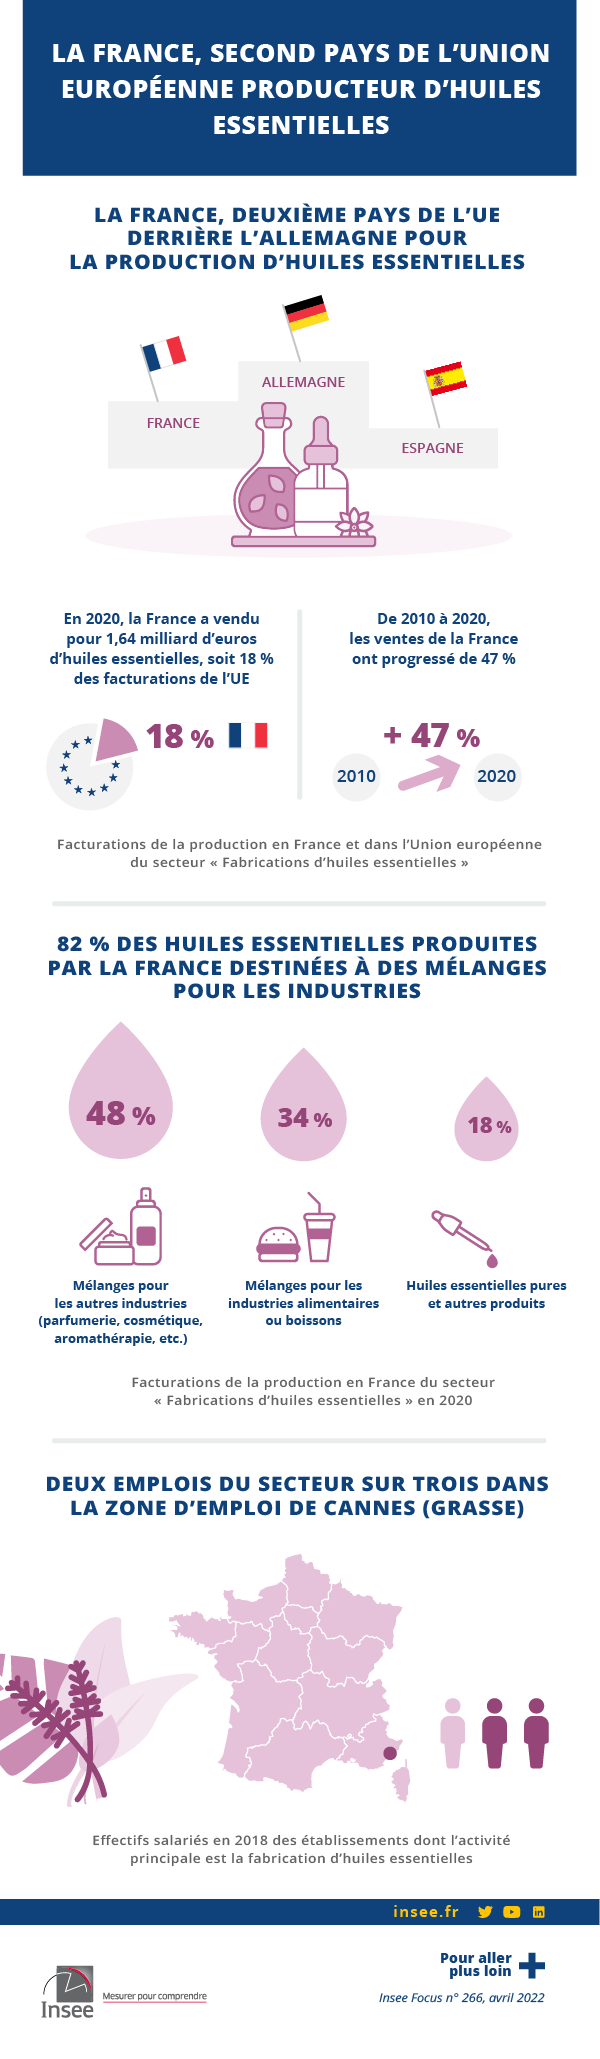 La France, second pays producteur d'huiles essentielles de l'Union  européenne - Insee Focus - 266